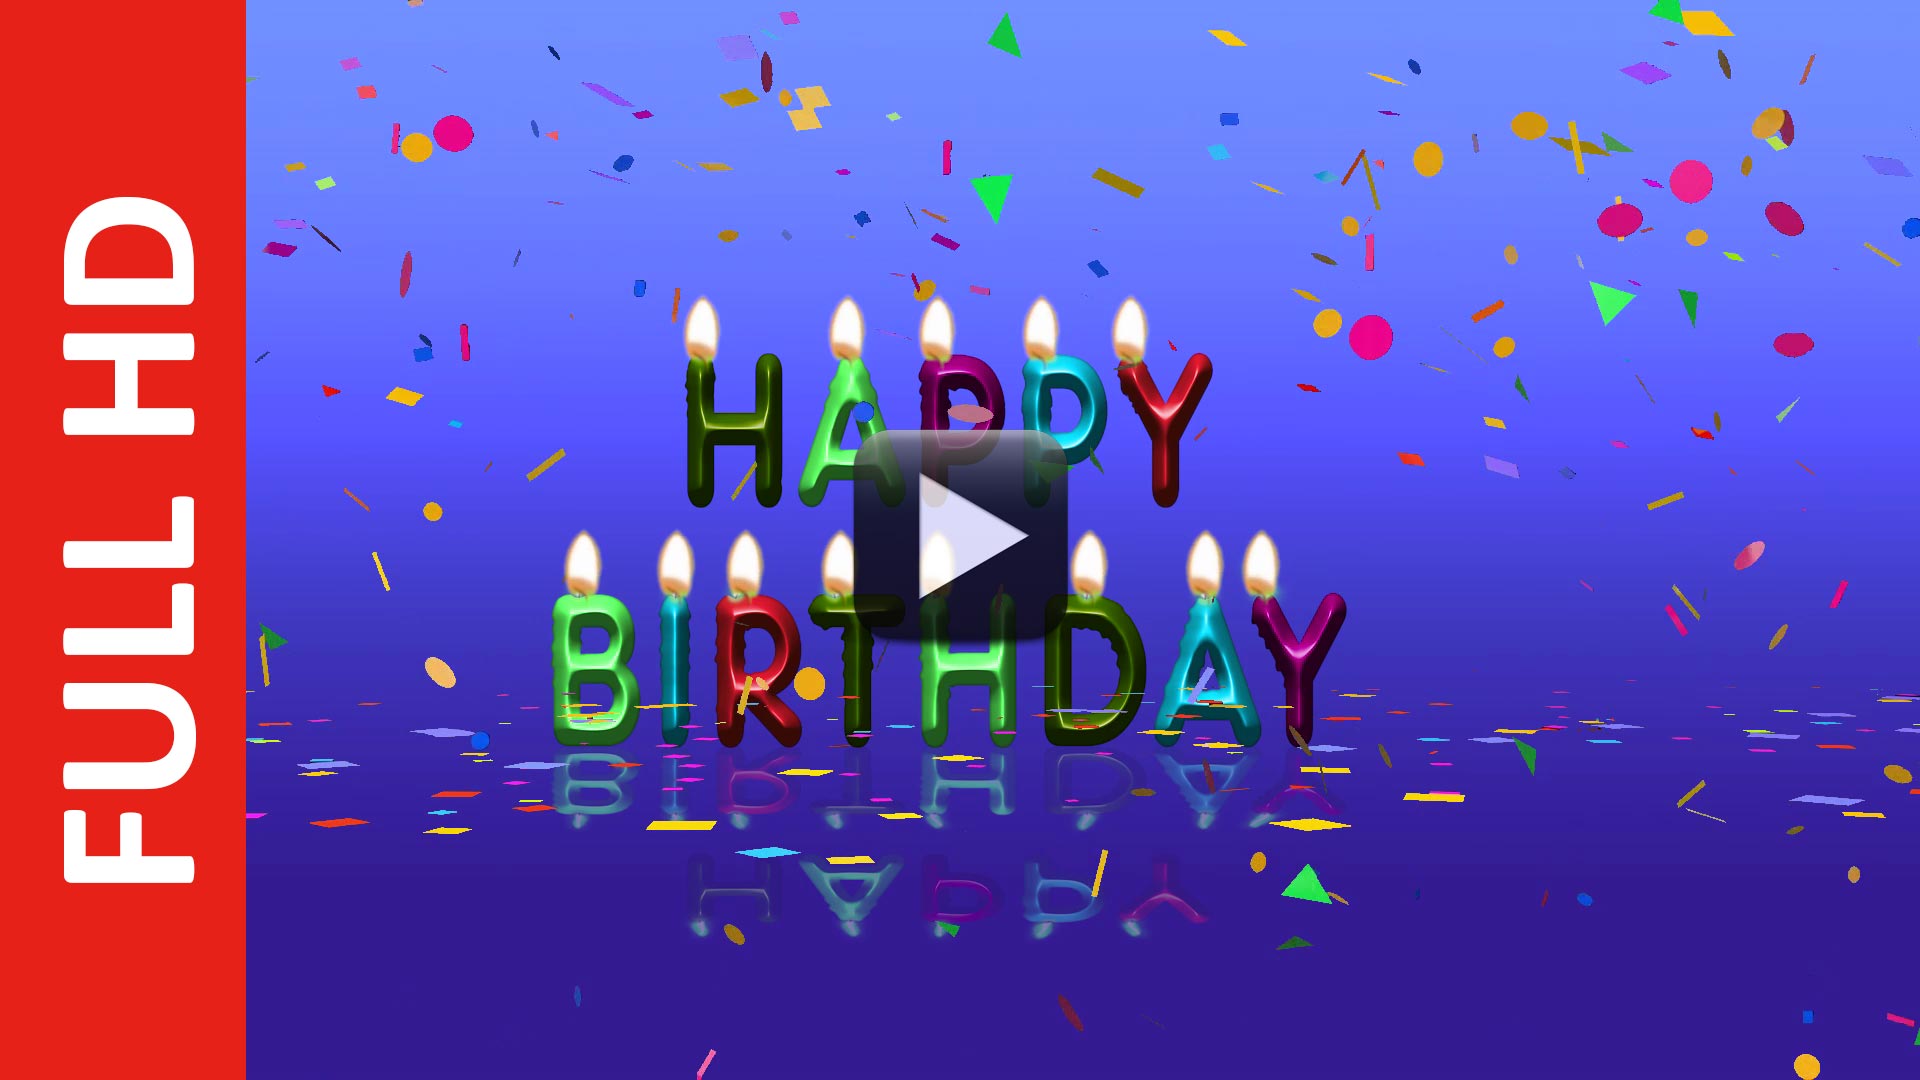 Xem video sinh nhật vui nhộn miễn phí để khám phá những tiết mục và trò chơi hấp dẫn nhất cho bữa tiệc sinh nhật của bạn. Đảm bảo bạn sẽ có một bữa tiệc đầy tràn tiếng cười và kỉ niệm đáng nhớ.